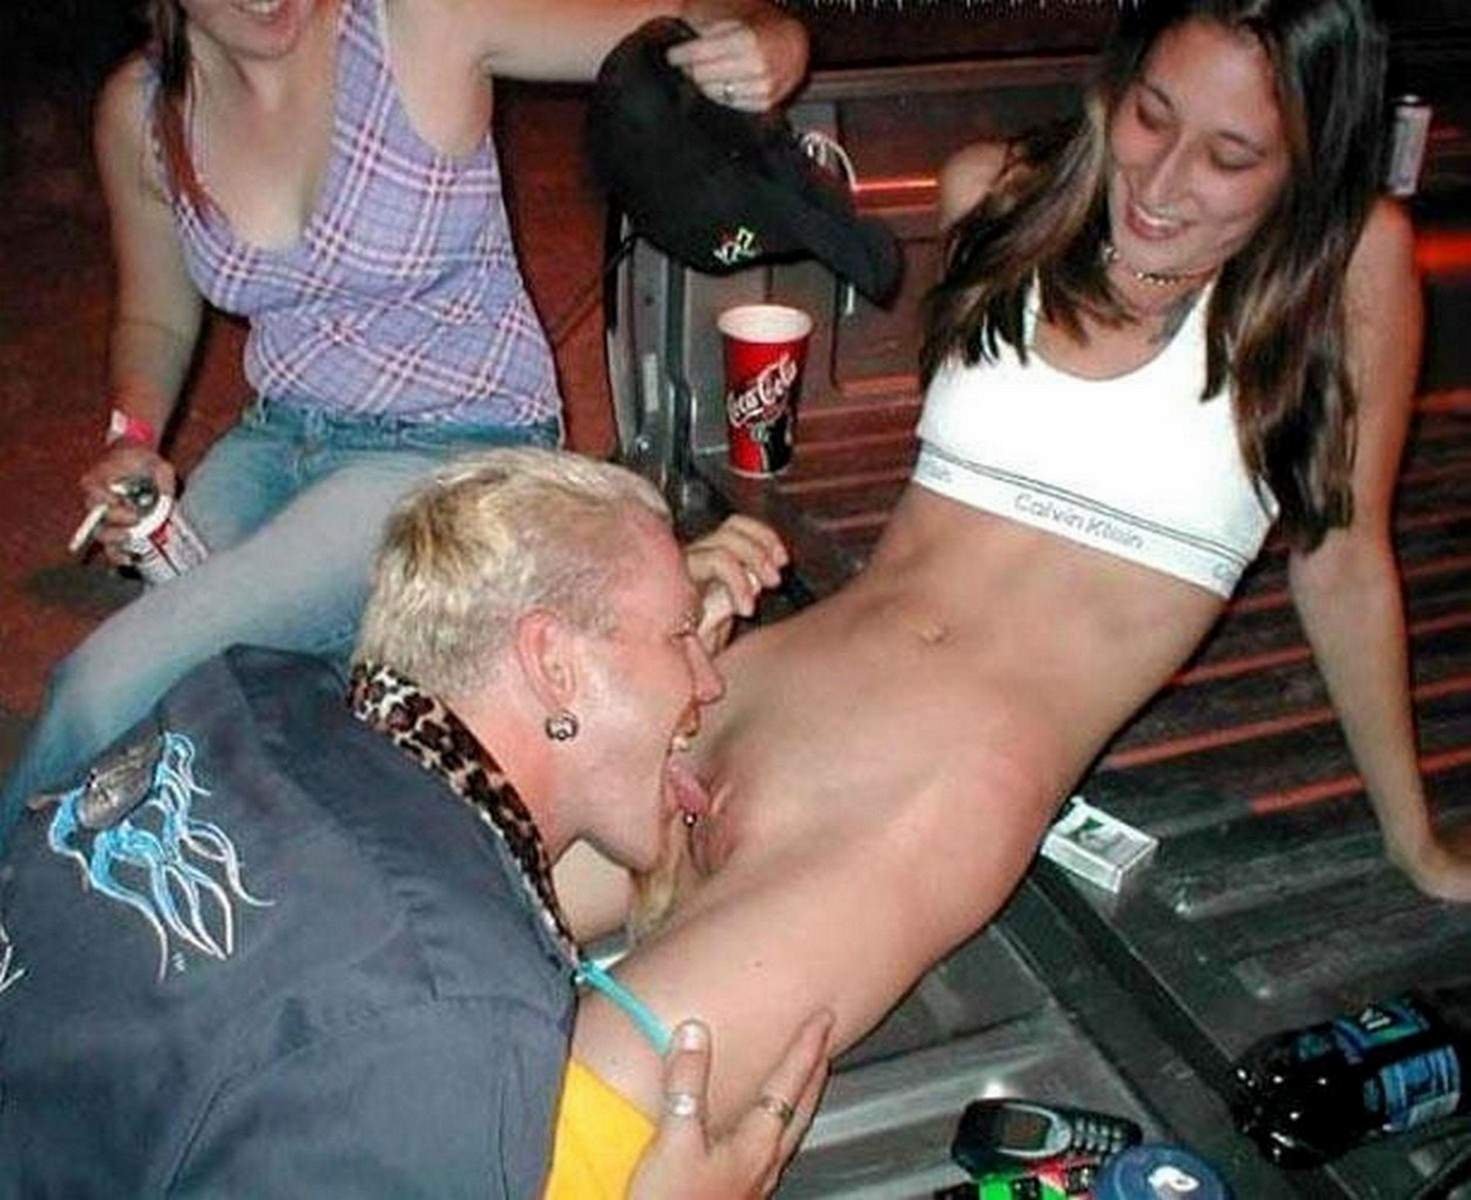  Пьяные лесбиянки на вечеринке порно фото и секс фотографии